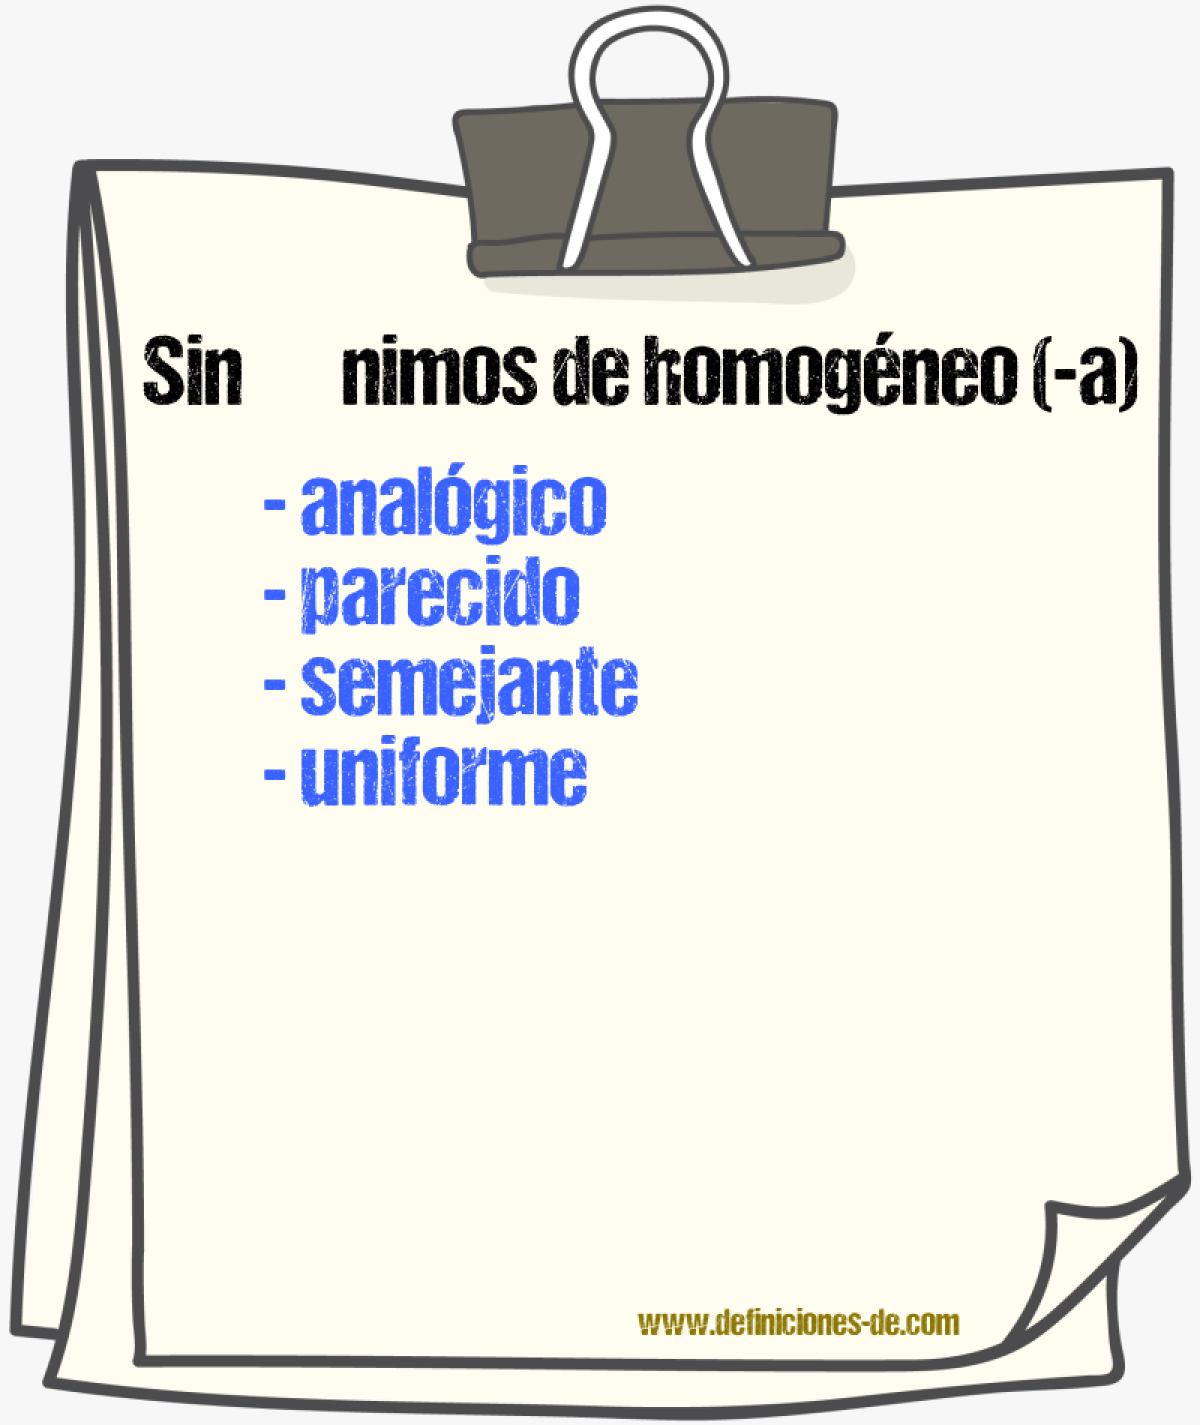 Sinónimos de homogéneo